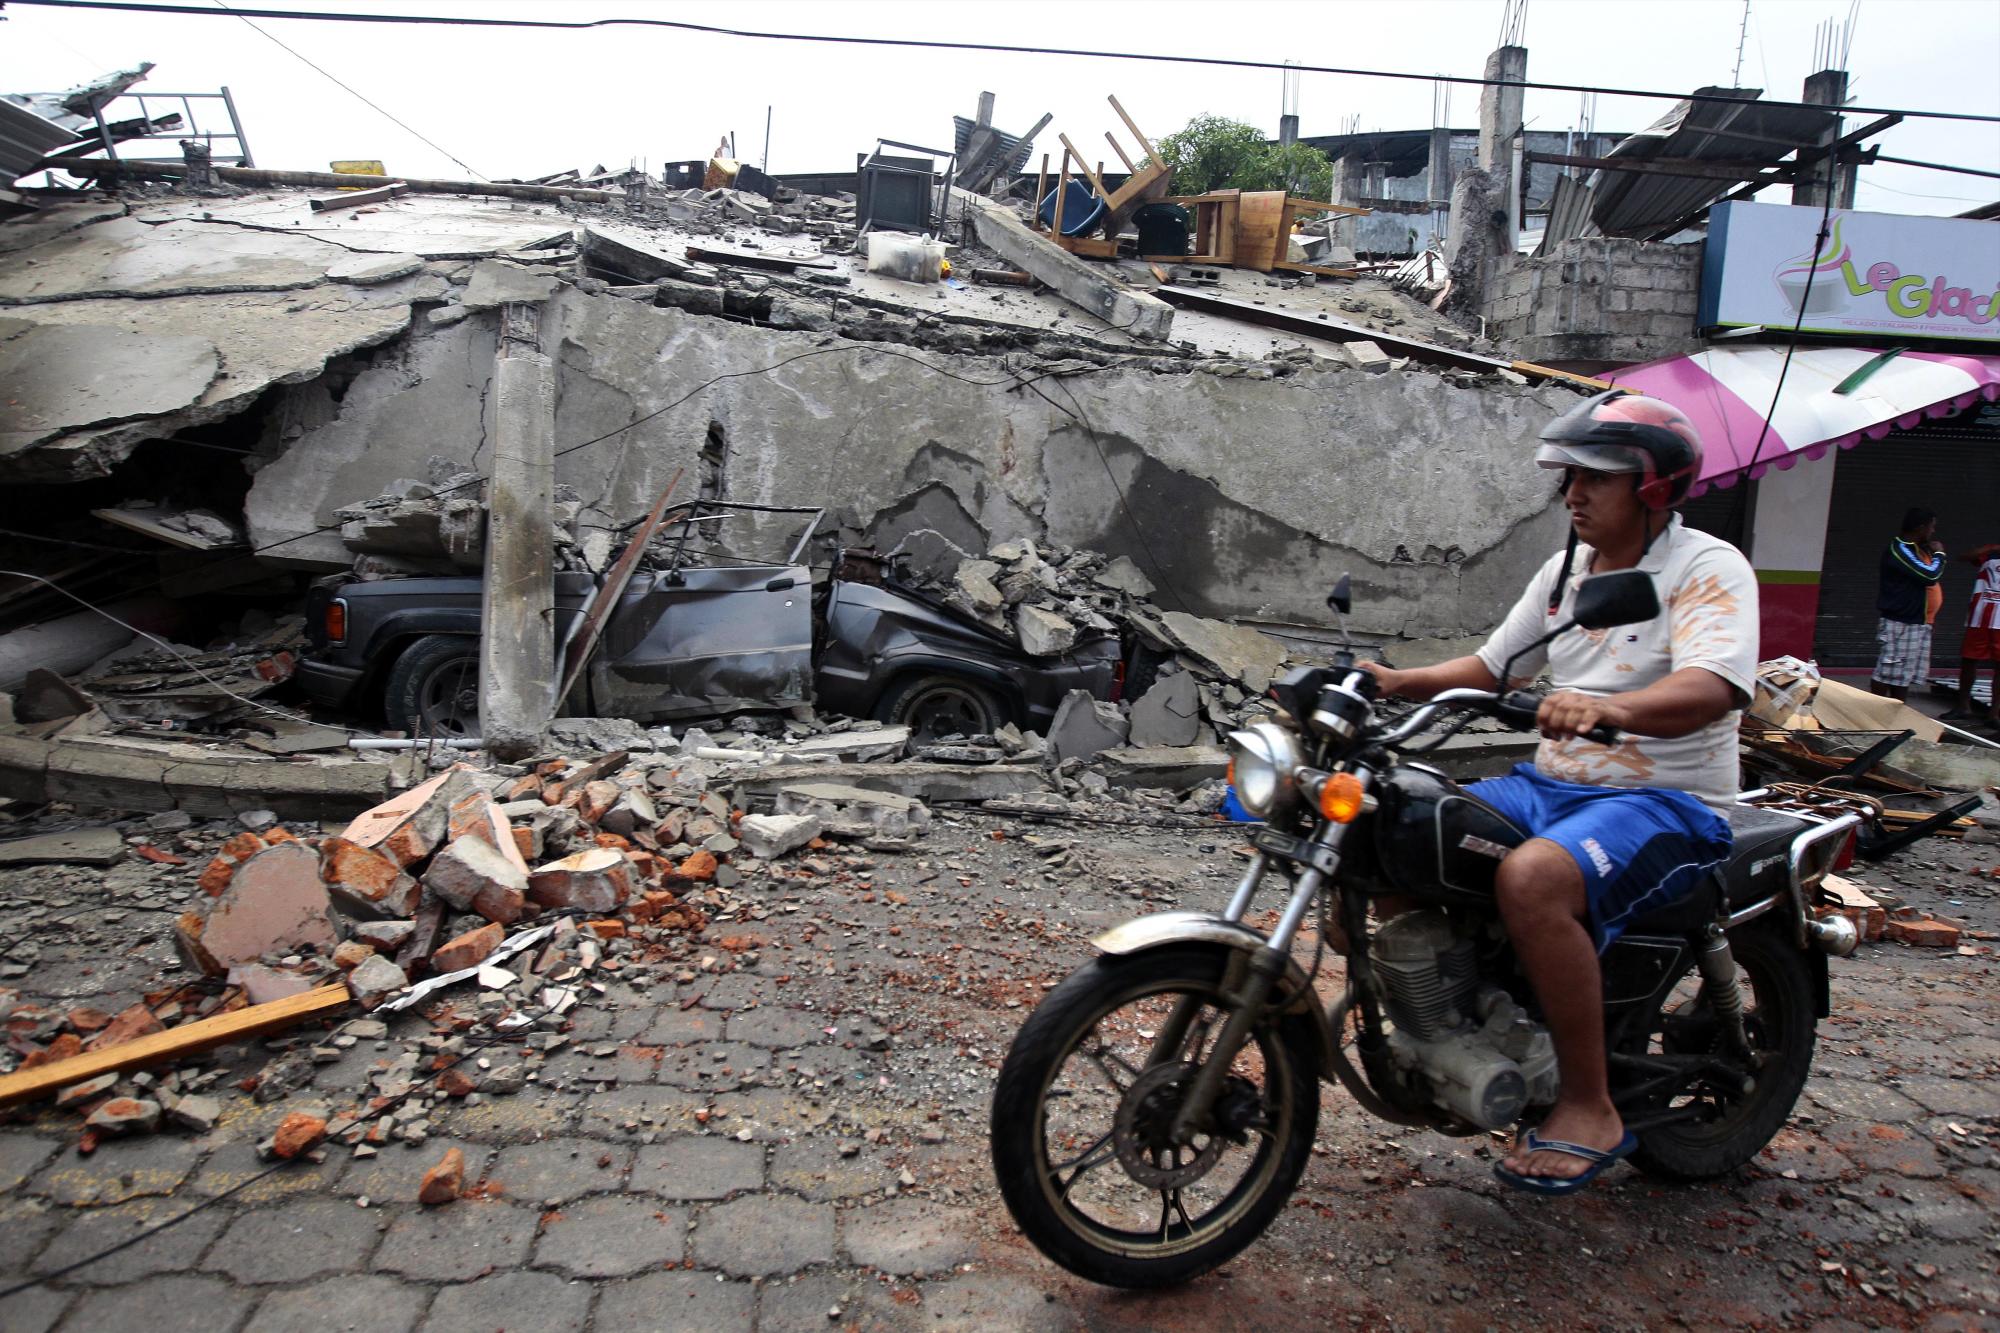 Los pobladores de Pedernales (Ecuador), hoy 17 de abril de 2016, afectados por el terremoto pasaron la noche en vela en busca de refugio por temor a réplicas, después de que sus viviendas colapsaron y se vieran algunas afectadas en su estructura. 